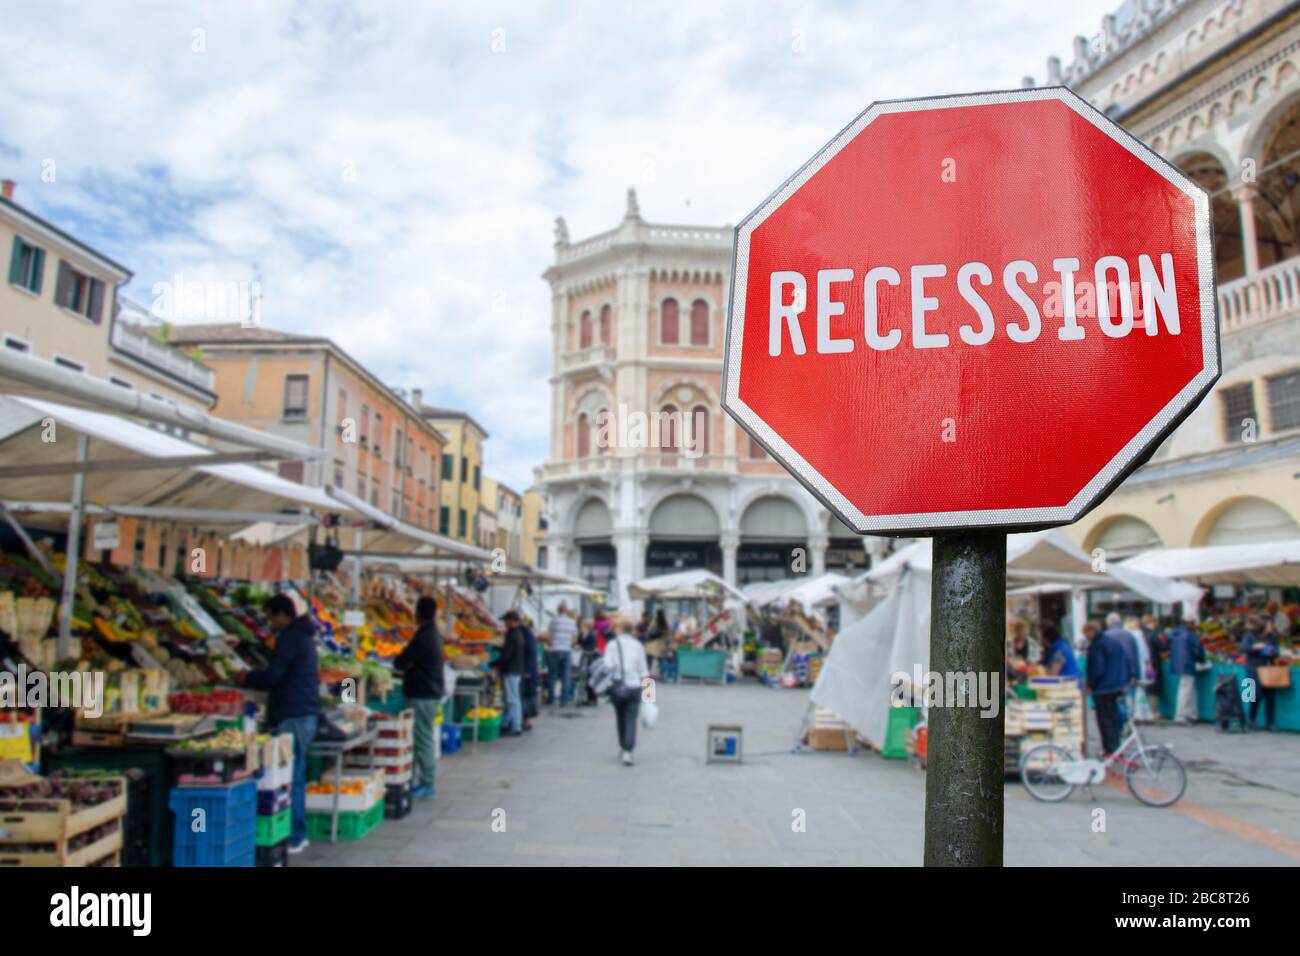 Rezession Zeichen mit Lebensmittelmarkt, Basar in Italien verwischen Hintergrund. Drohende finanzielle Crash in Italien wegen Coronavirus. Globale Wirtschaftskrise Stockfoto